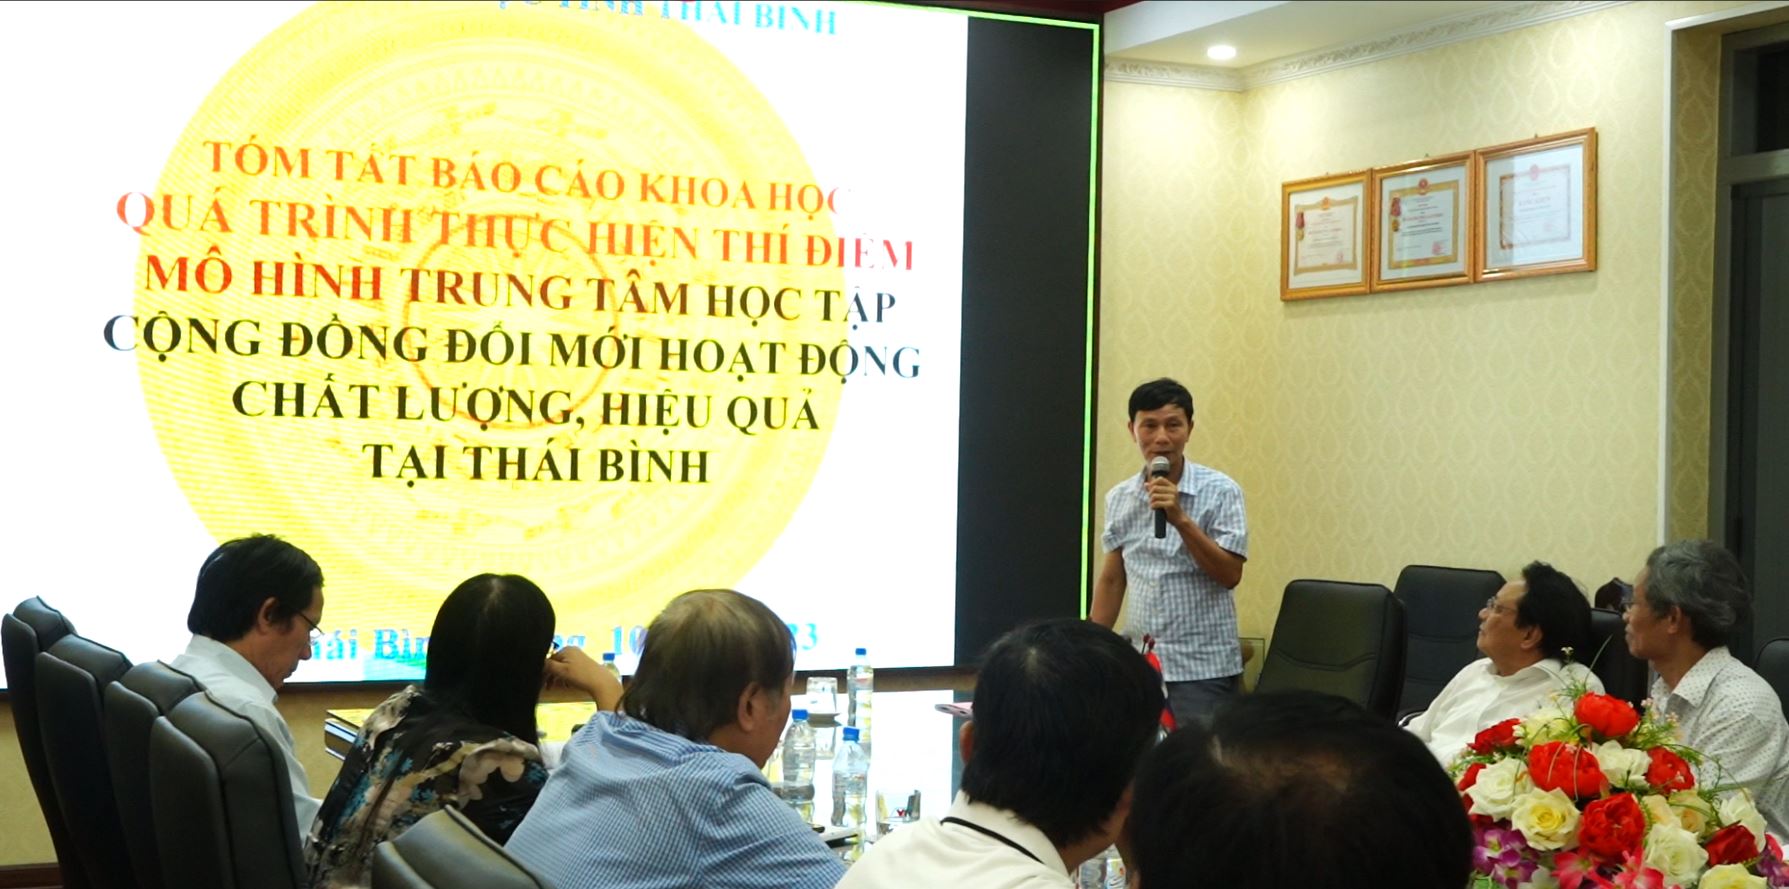 Báo cáo Kết quả thực hiện mô hình đổi mới TTHTCĐ hoạt động chất lượng, hiệu quả ở Thái Bình